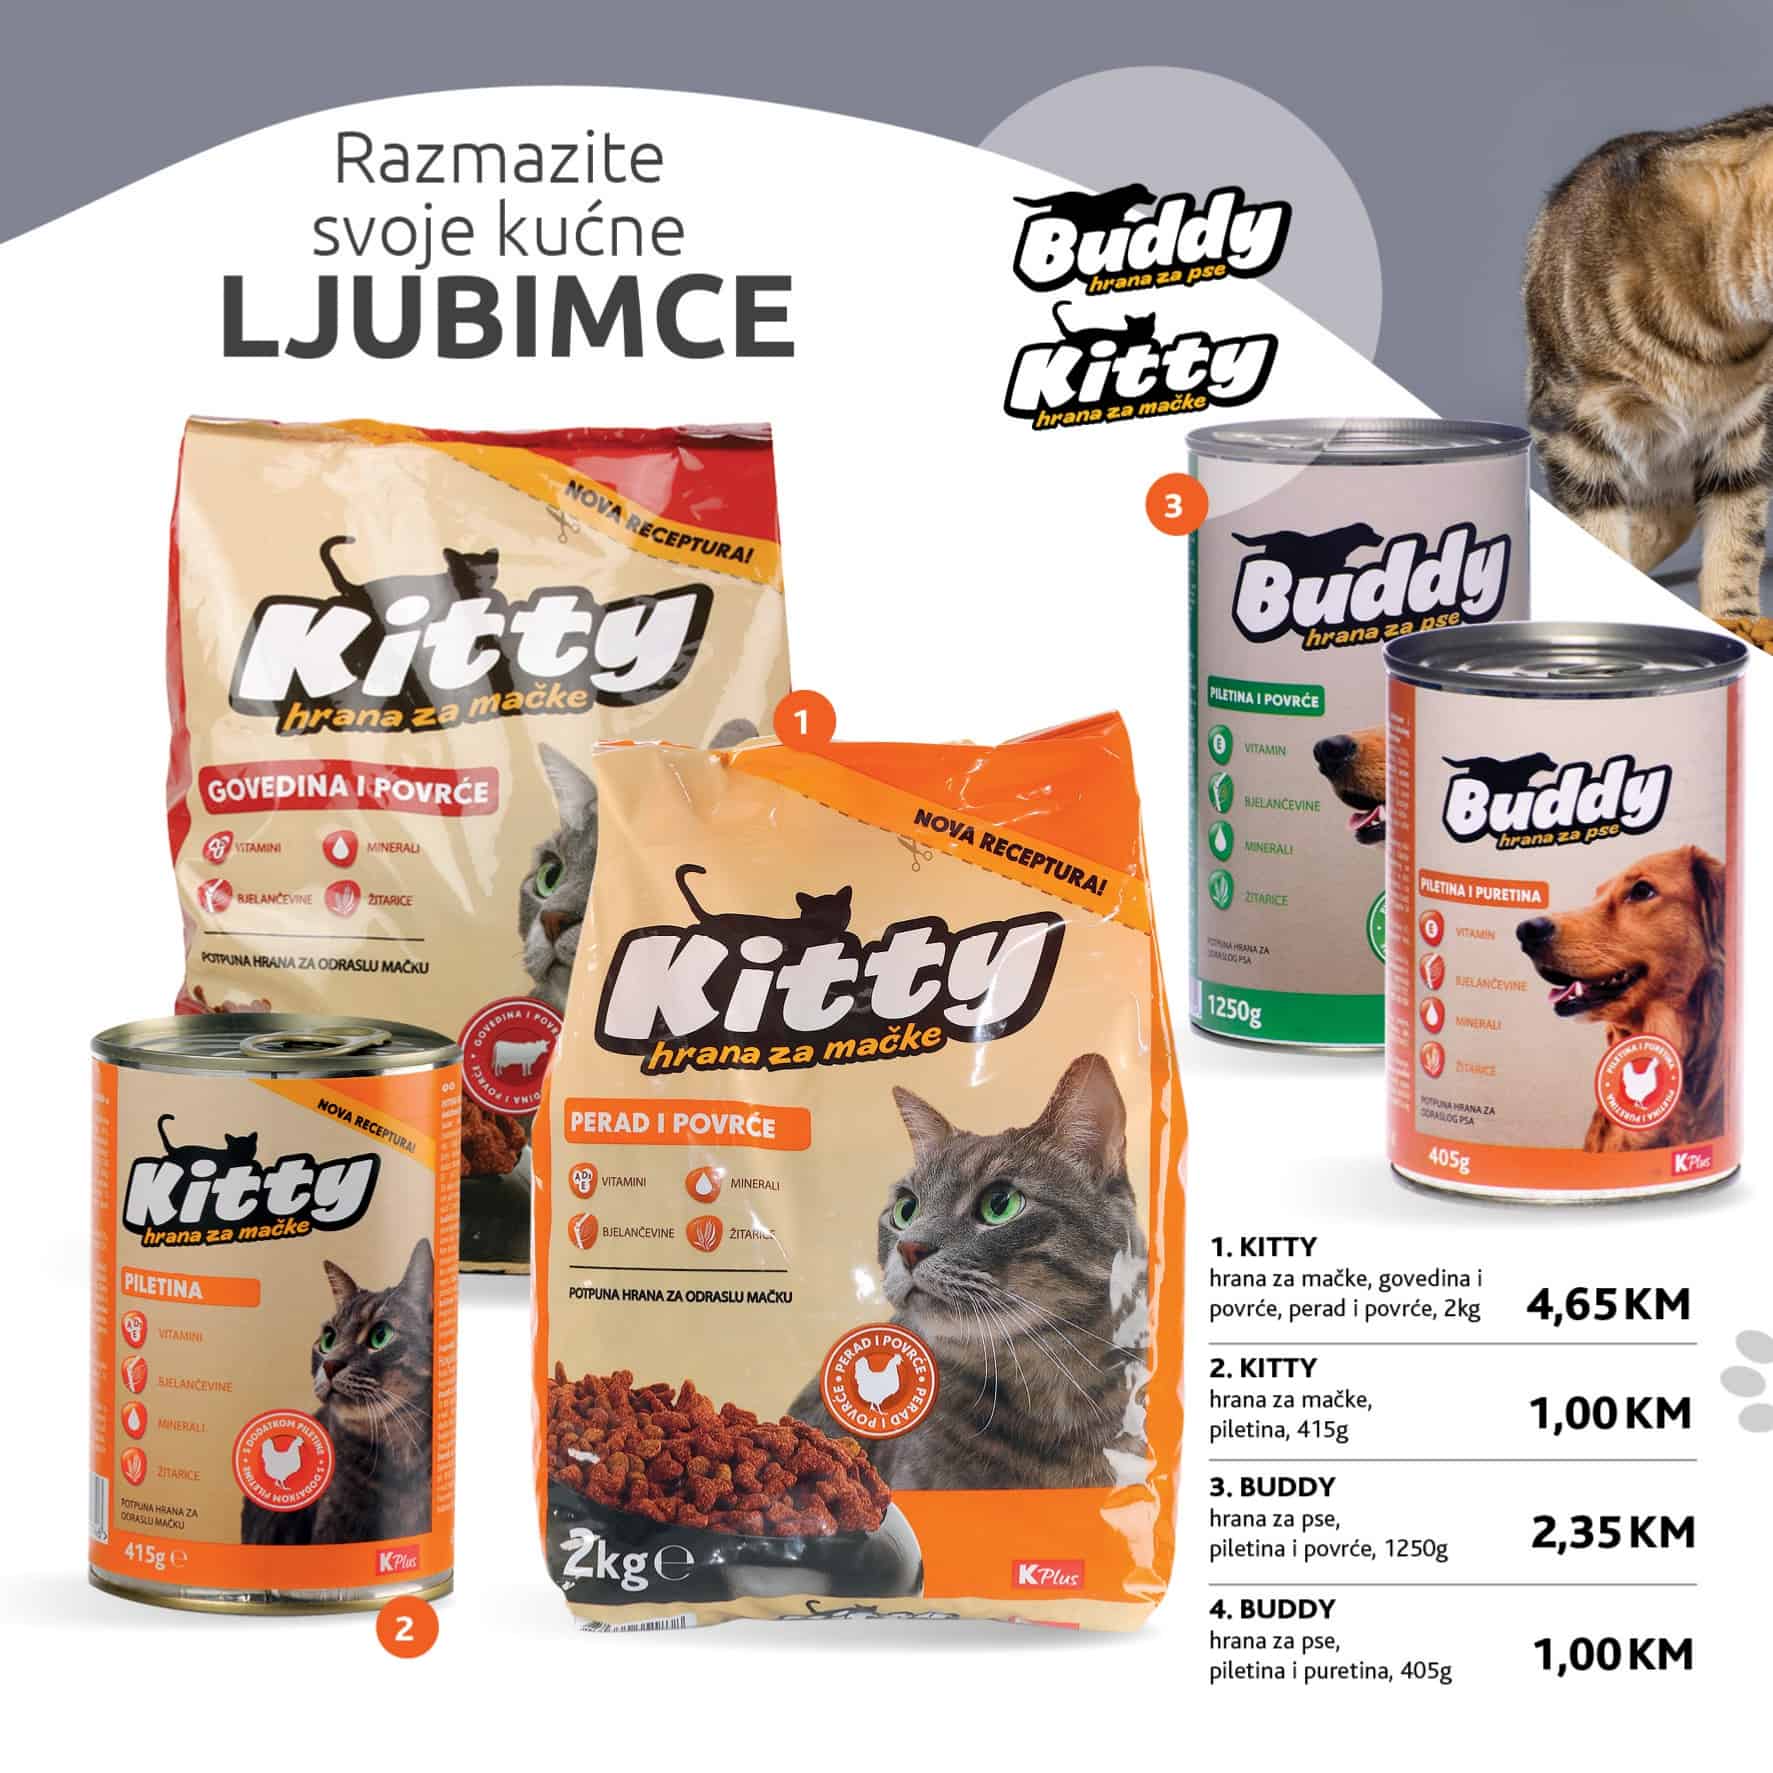 Konzum katalog donosi nam hranu za kucne ljubimce KITTY po snizenim akcijskim cijenama!